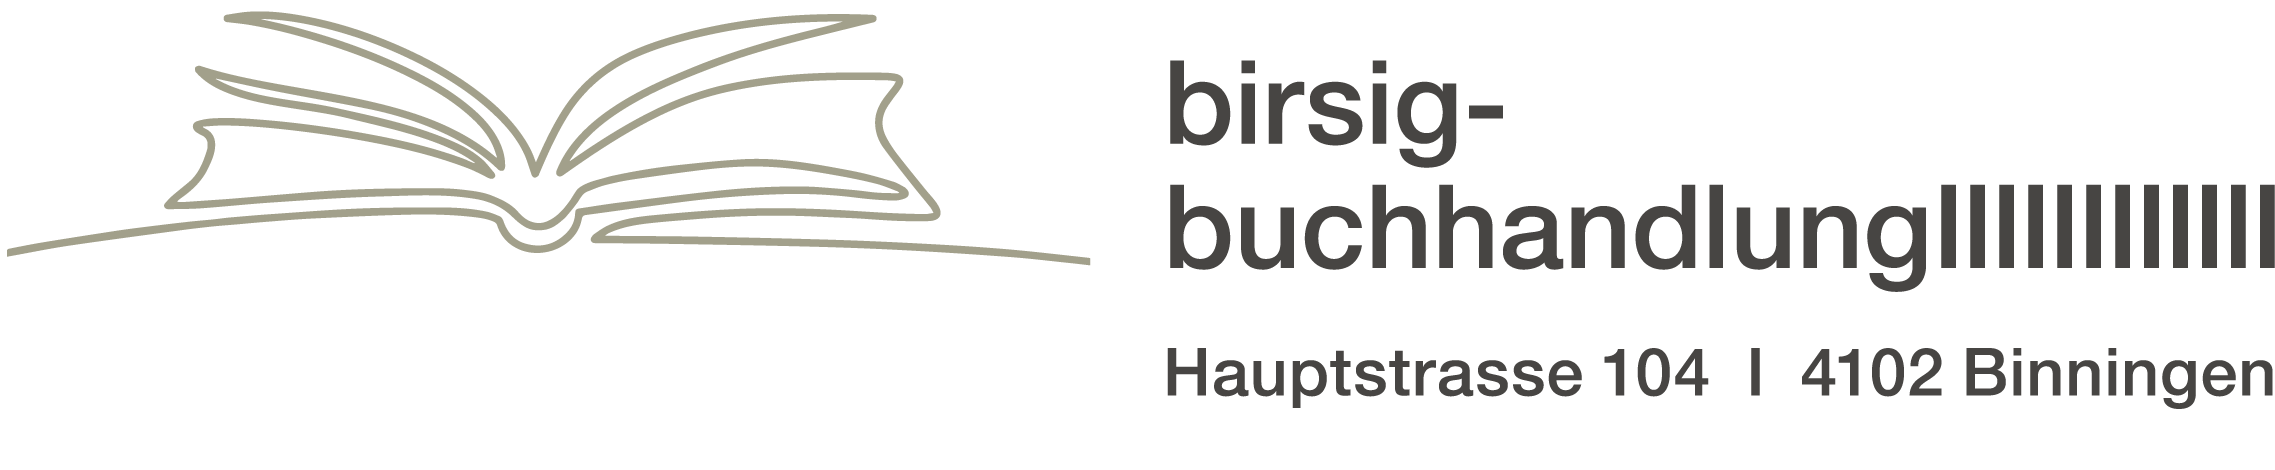 Birsig-Buchhandlung Buchtipps